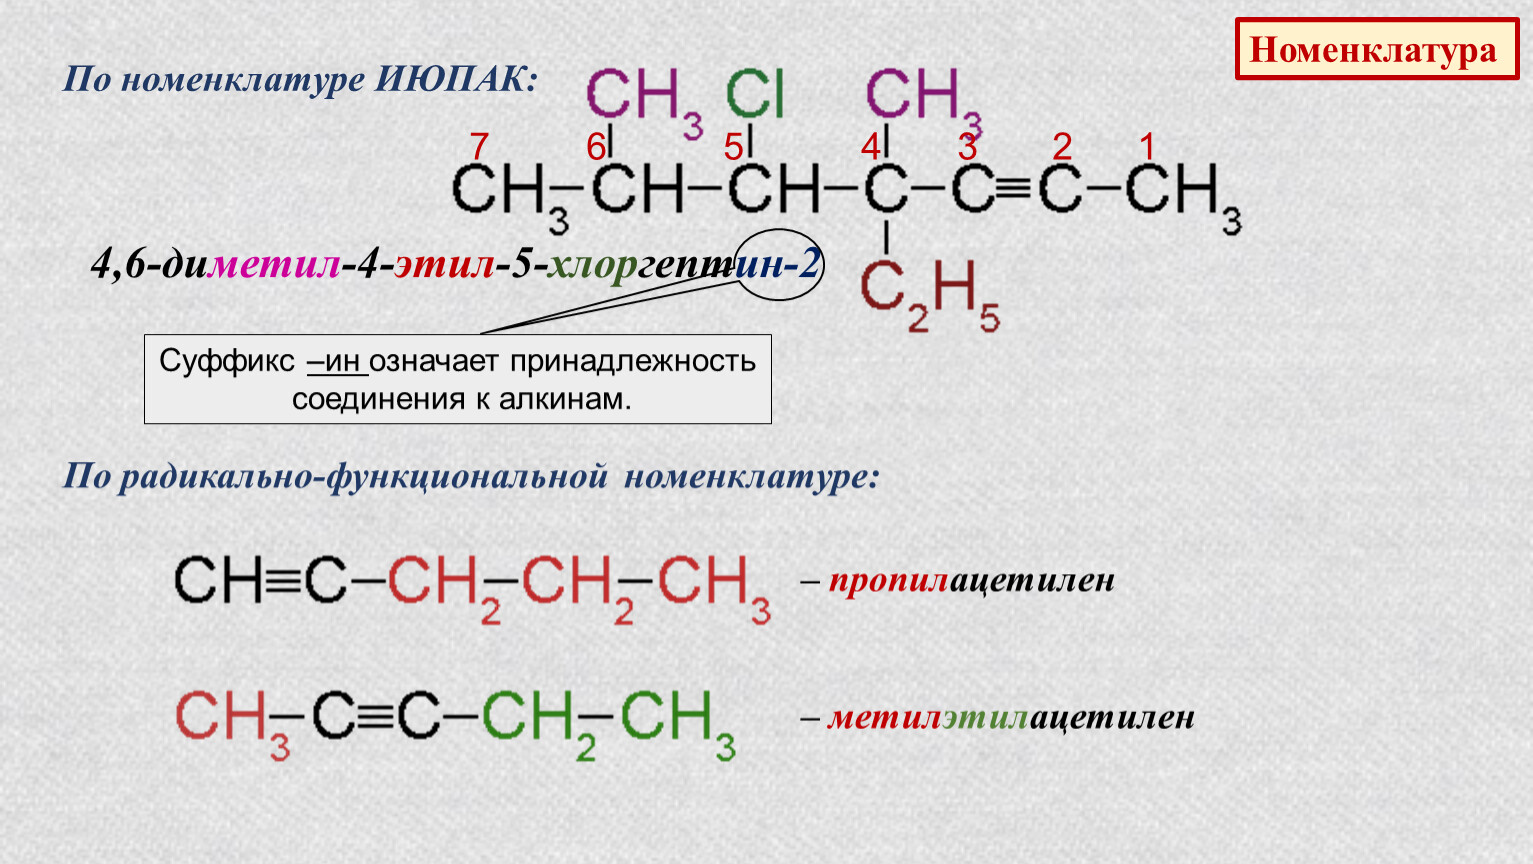 5 метил 4 этил. 5,6-Диметил-3-этилоктен-1 номенклатуре IUPAC. Номенклатура по ИЮПАК. 2,5-Диметил-4-этил. Номенклатура IUPAC.